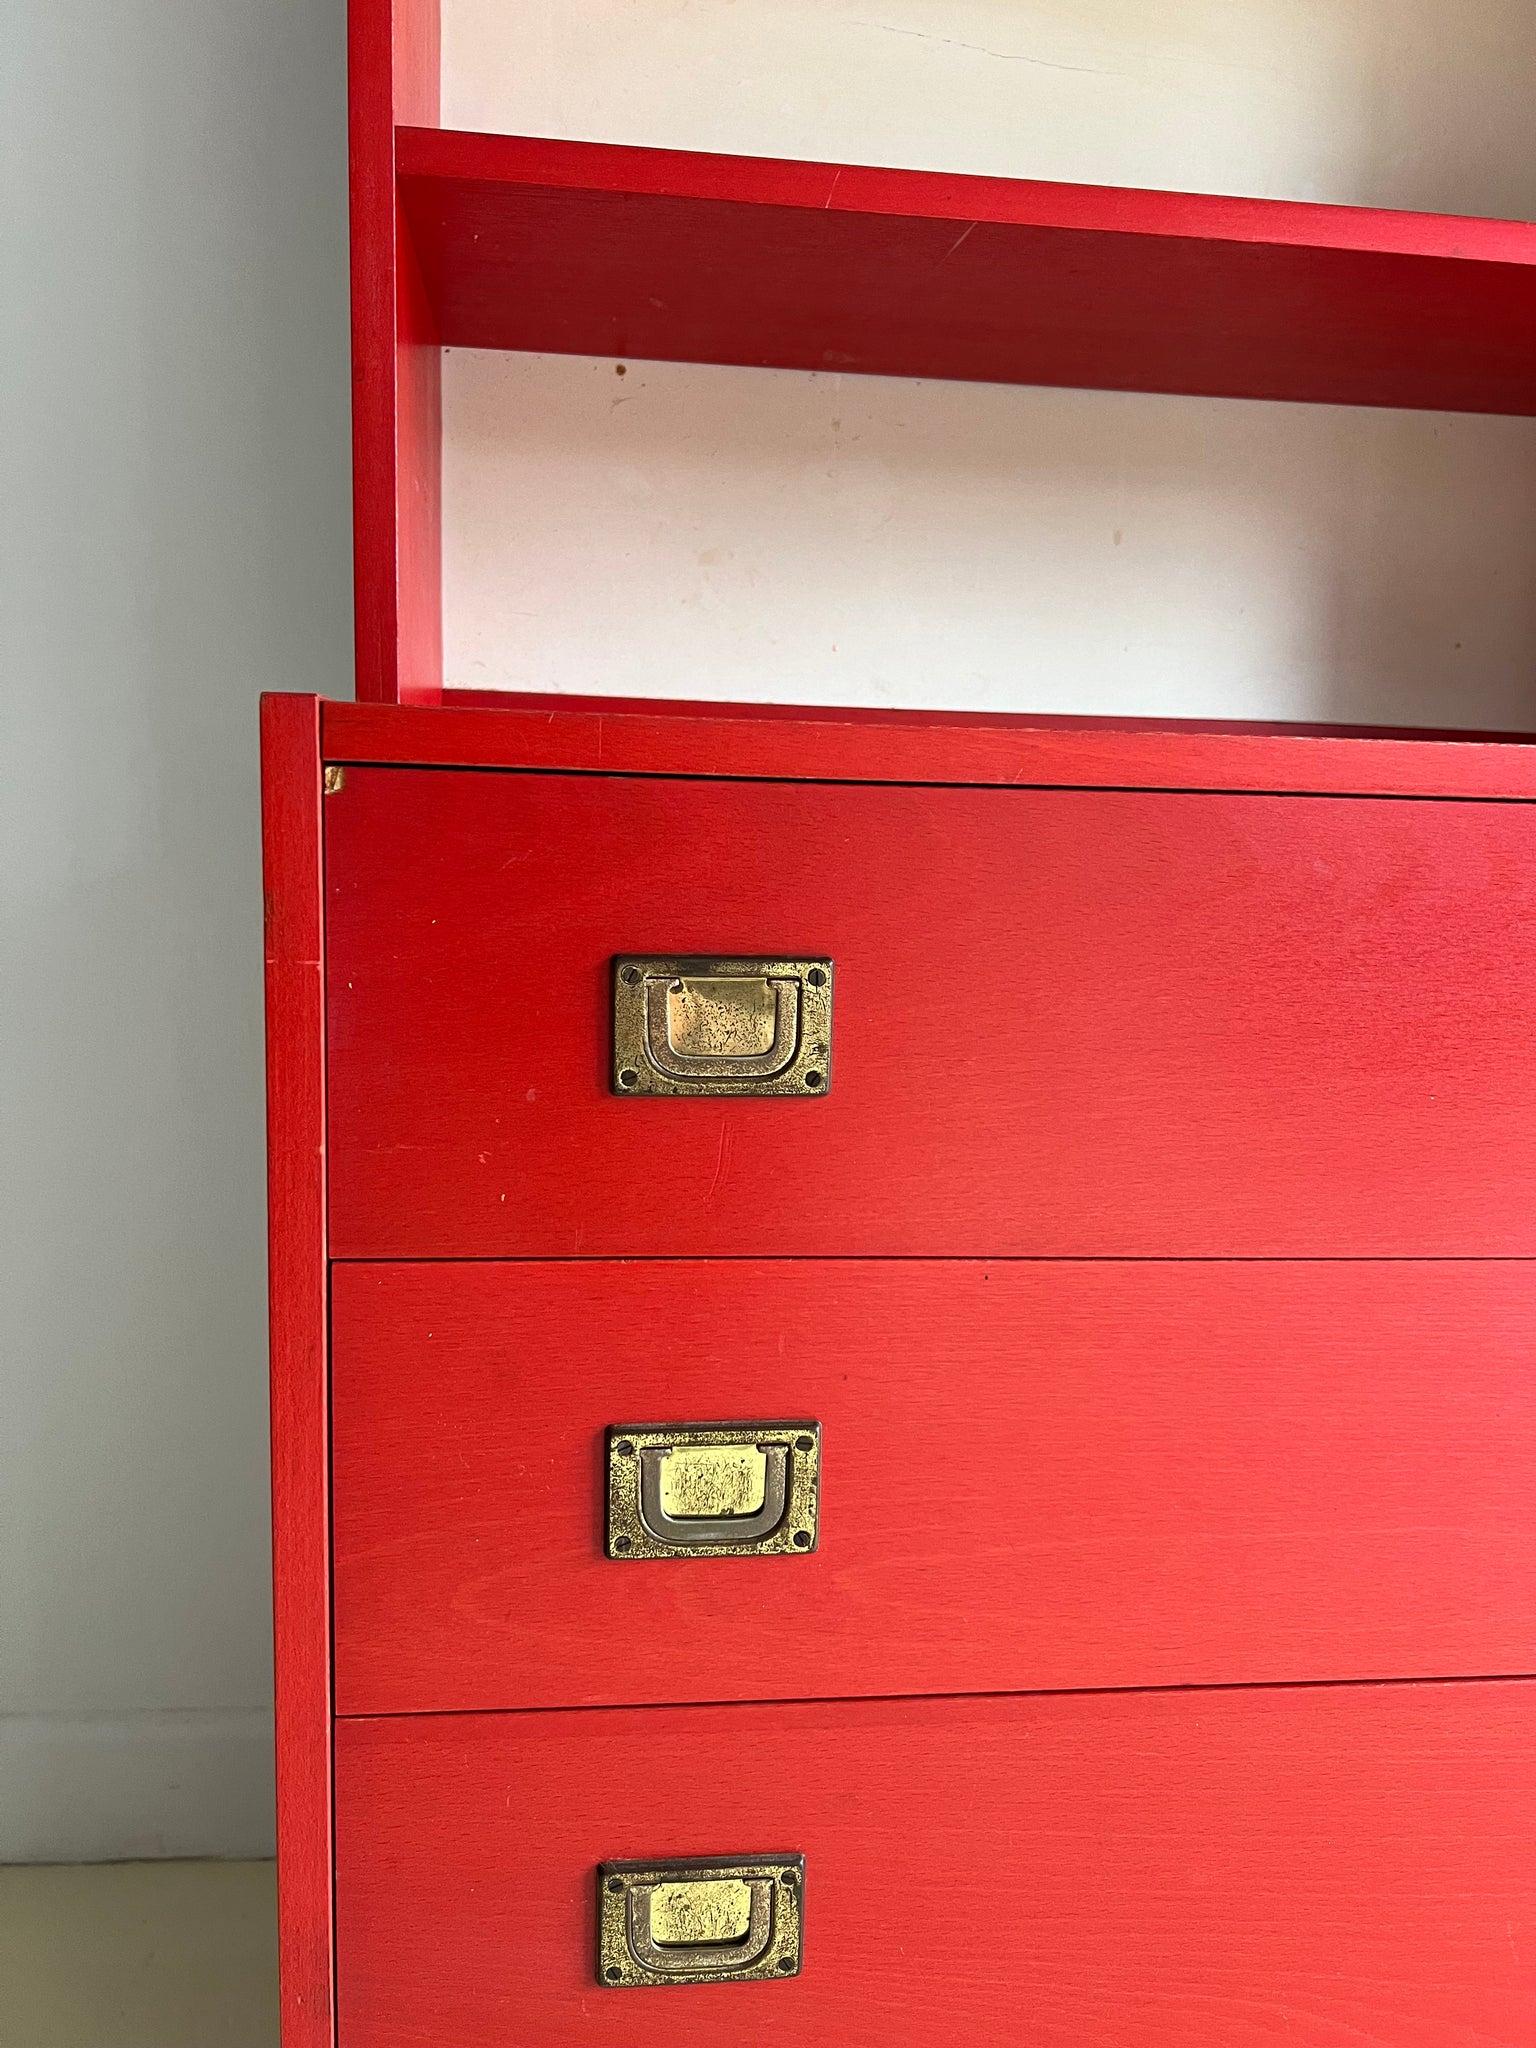 Vintage Danish Red Teak Dressers